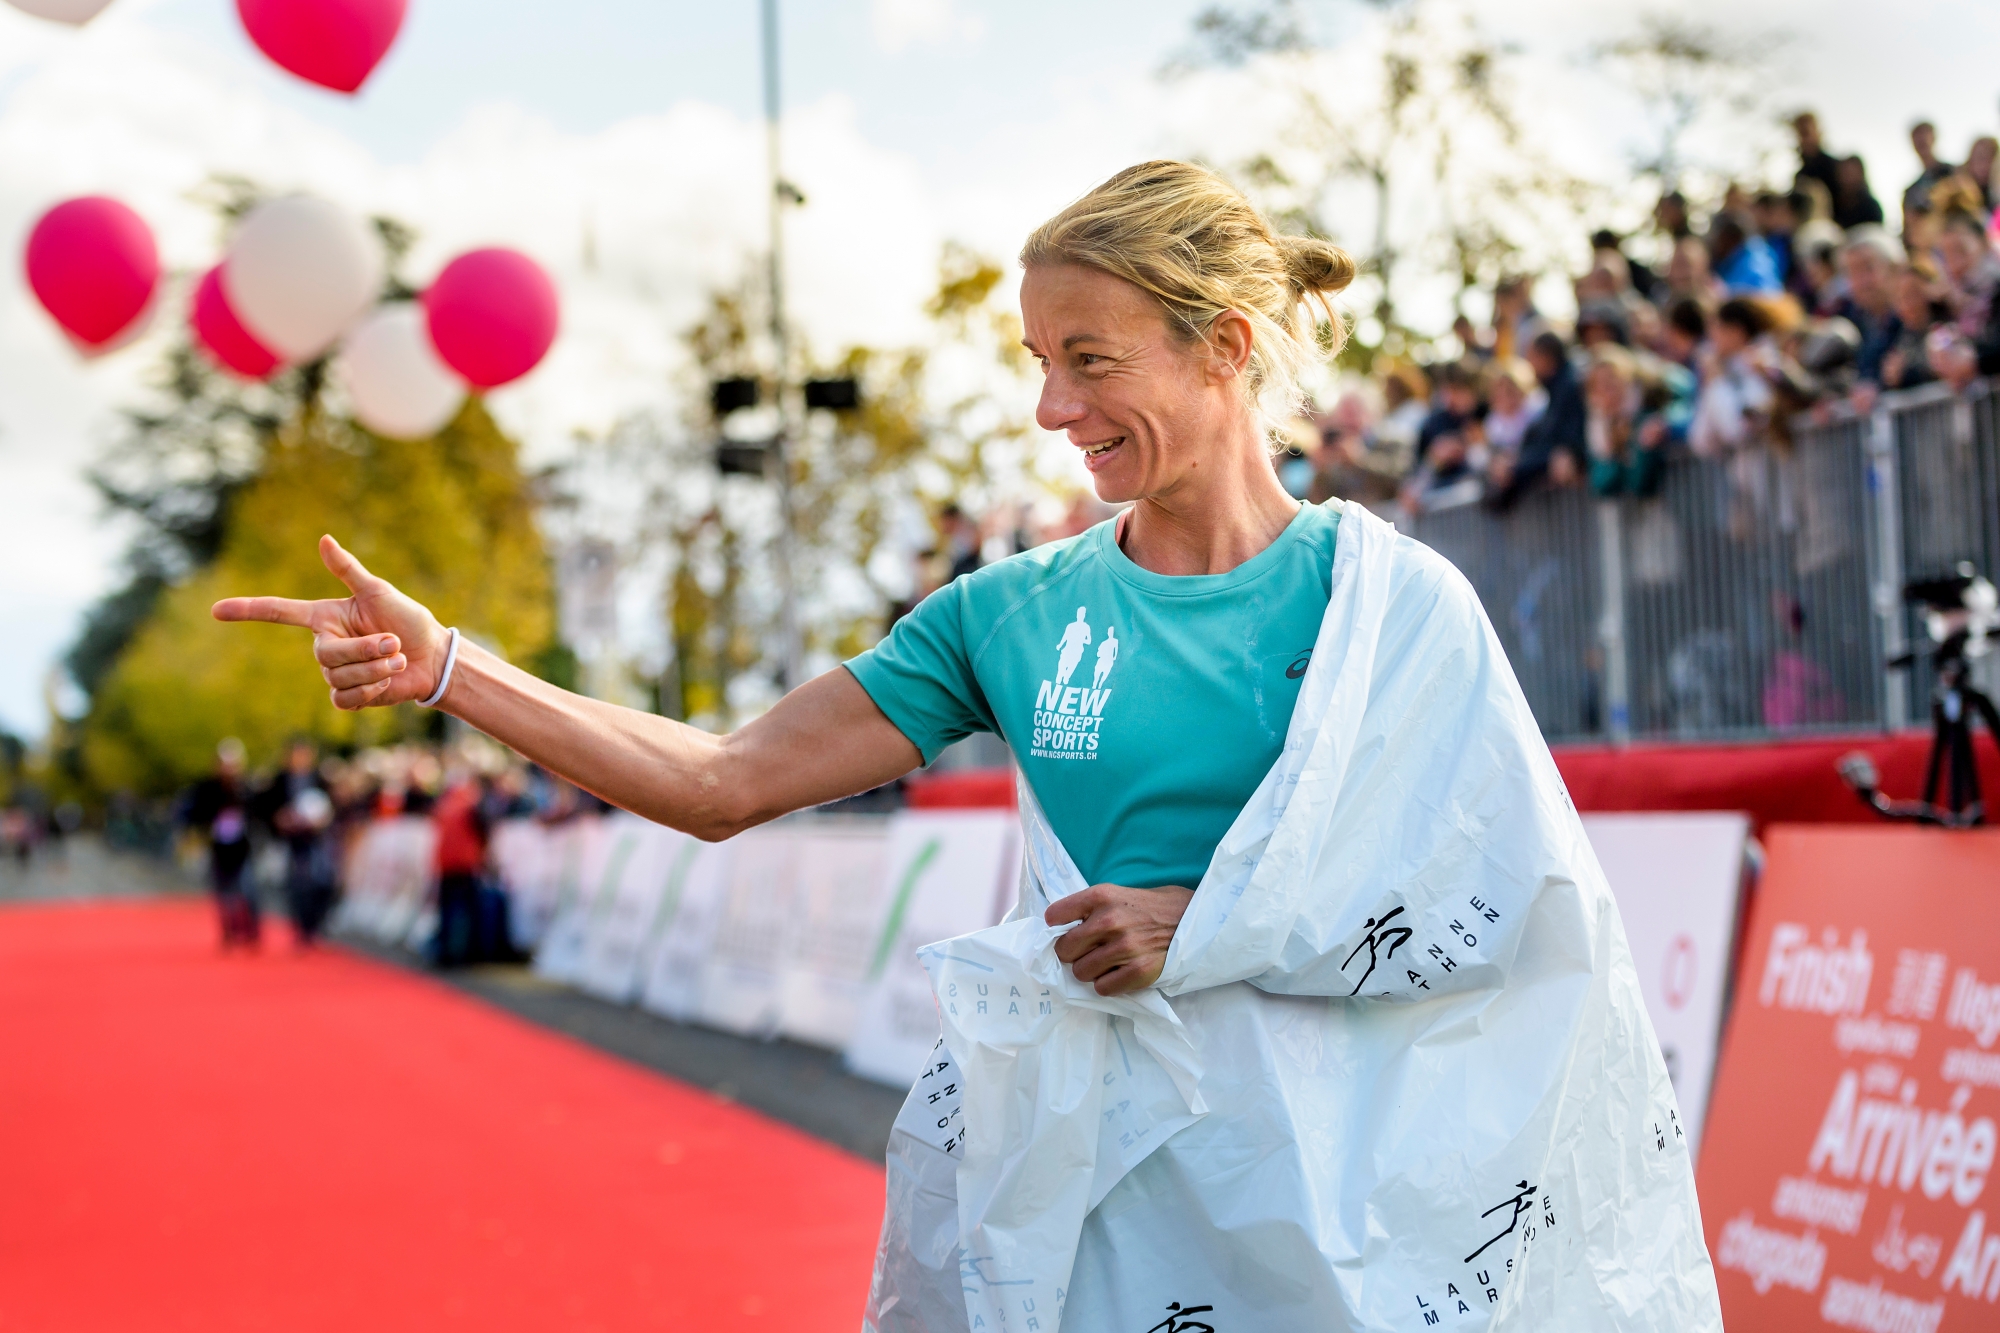 La coureuse suisse, Laura Hrebec, passe la ligne d'arrivee en gagant la categorie femmes lors de la 25eme edition du Lausanne Marathon ce dimanche 22 octobre 2017 a Lausanne. (KEYSTONE/Jean-Christophe Bott) SCHWEIZ LAUSANNE MARATHON